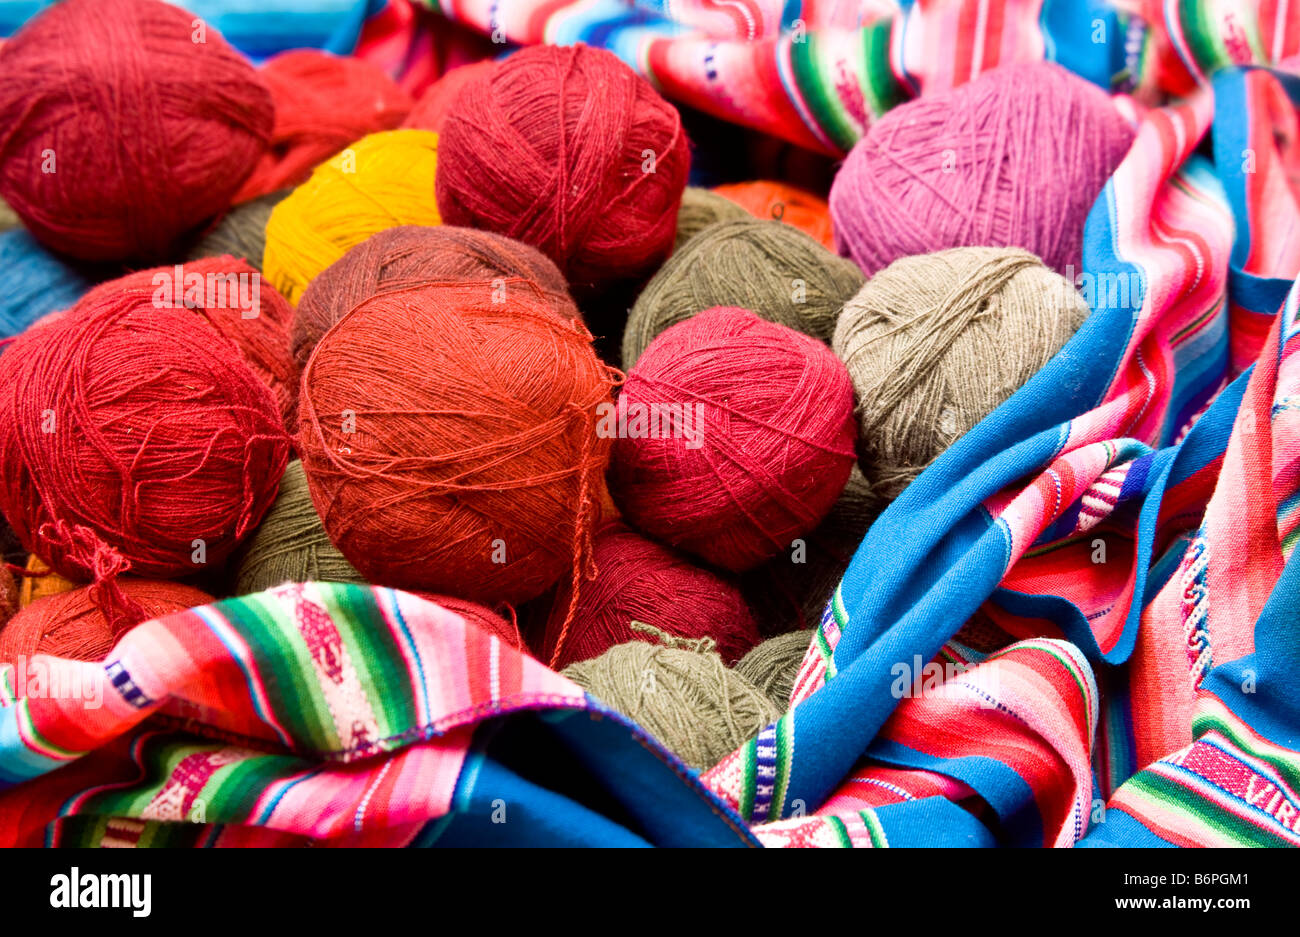 Coloratissime palle di naturalmente tinti llama o lana di alpaca a Chinchero mercato Perù Sud America Foto Stock